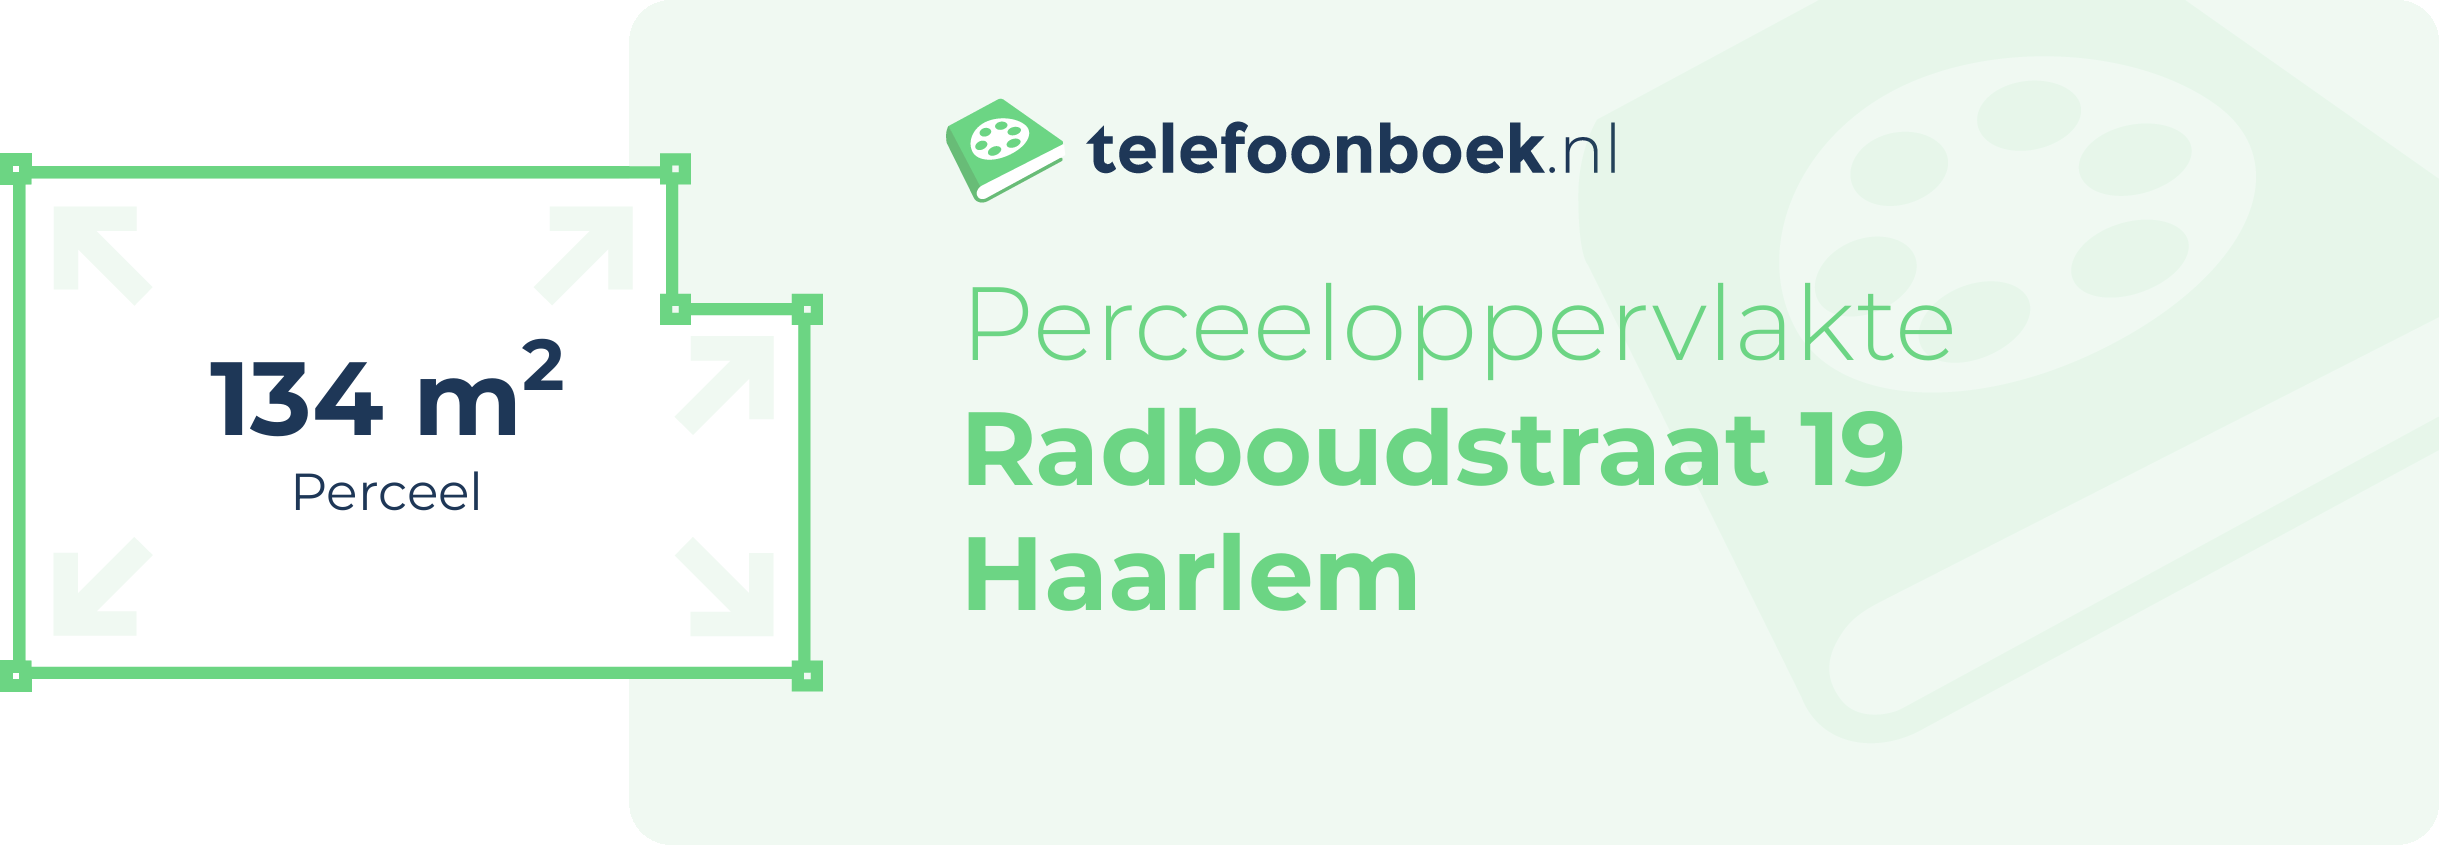 Perceeloppervlakte Radboudstraat 19 Haarlem